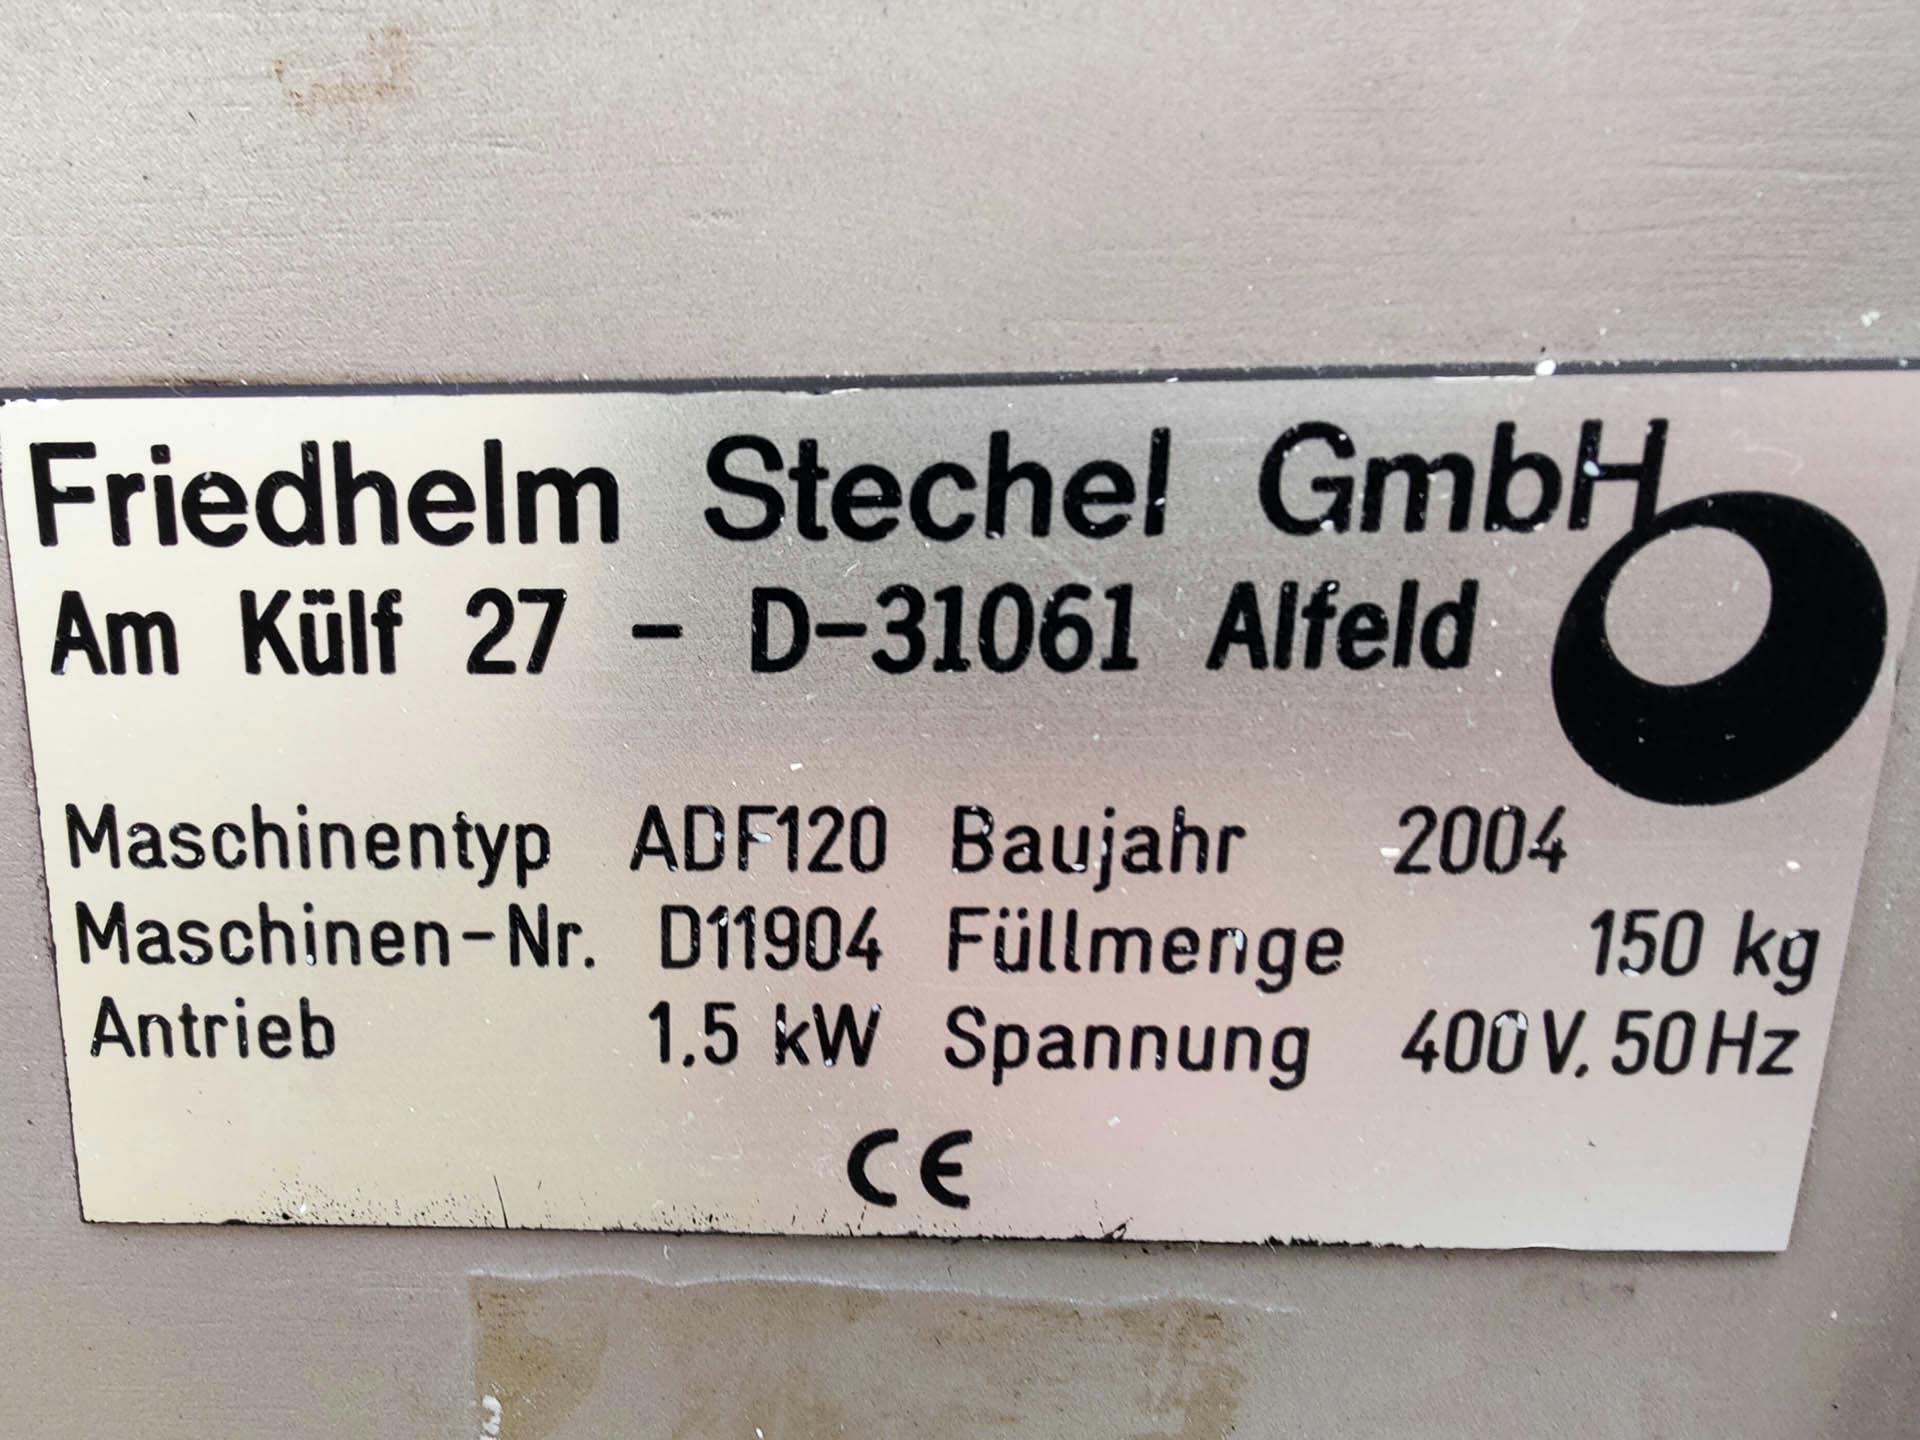 Friedhelm Stechel ADF-120 - Bandeja de revestimento - image 5